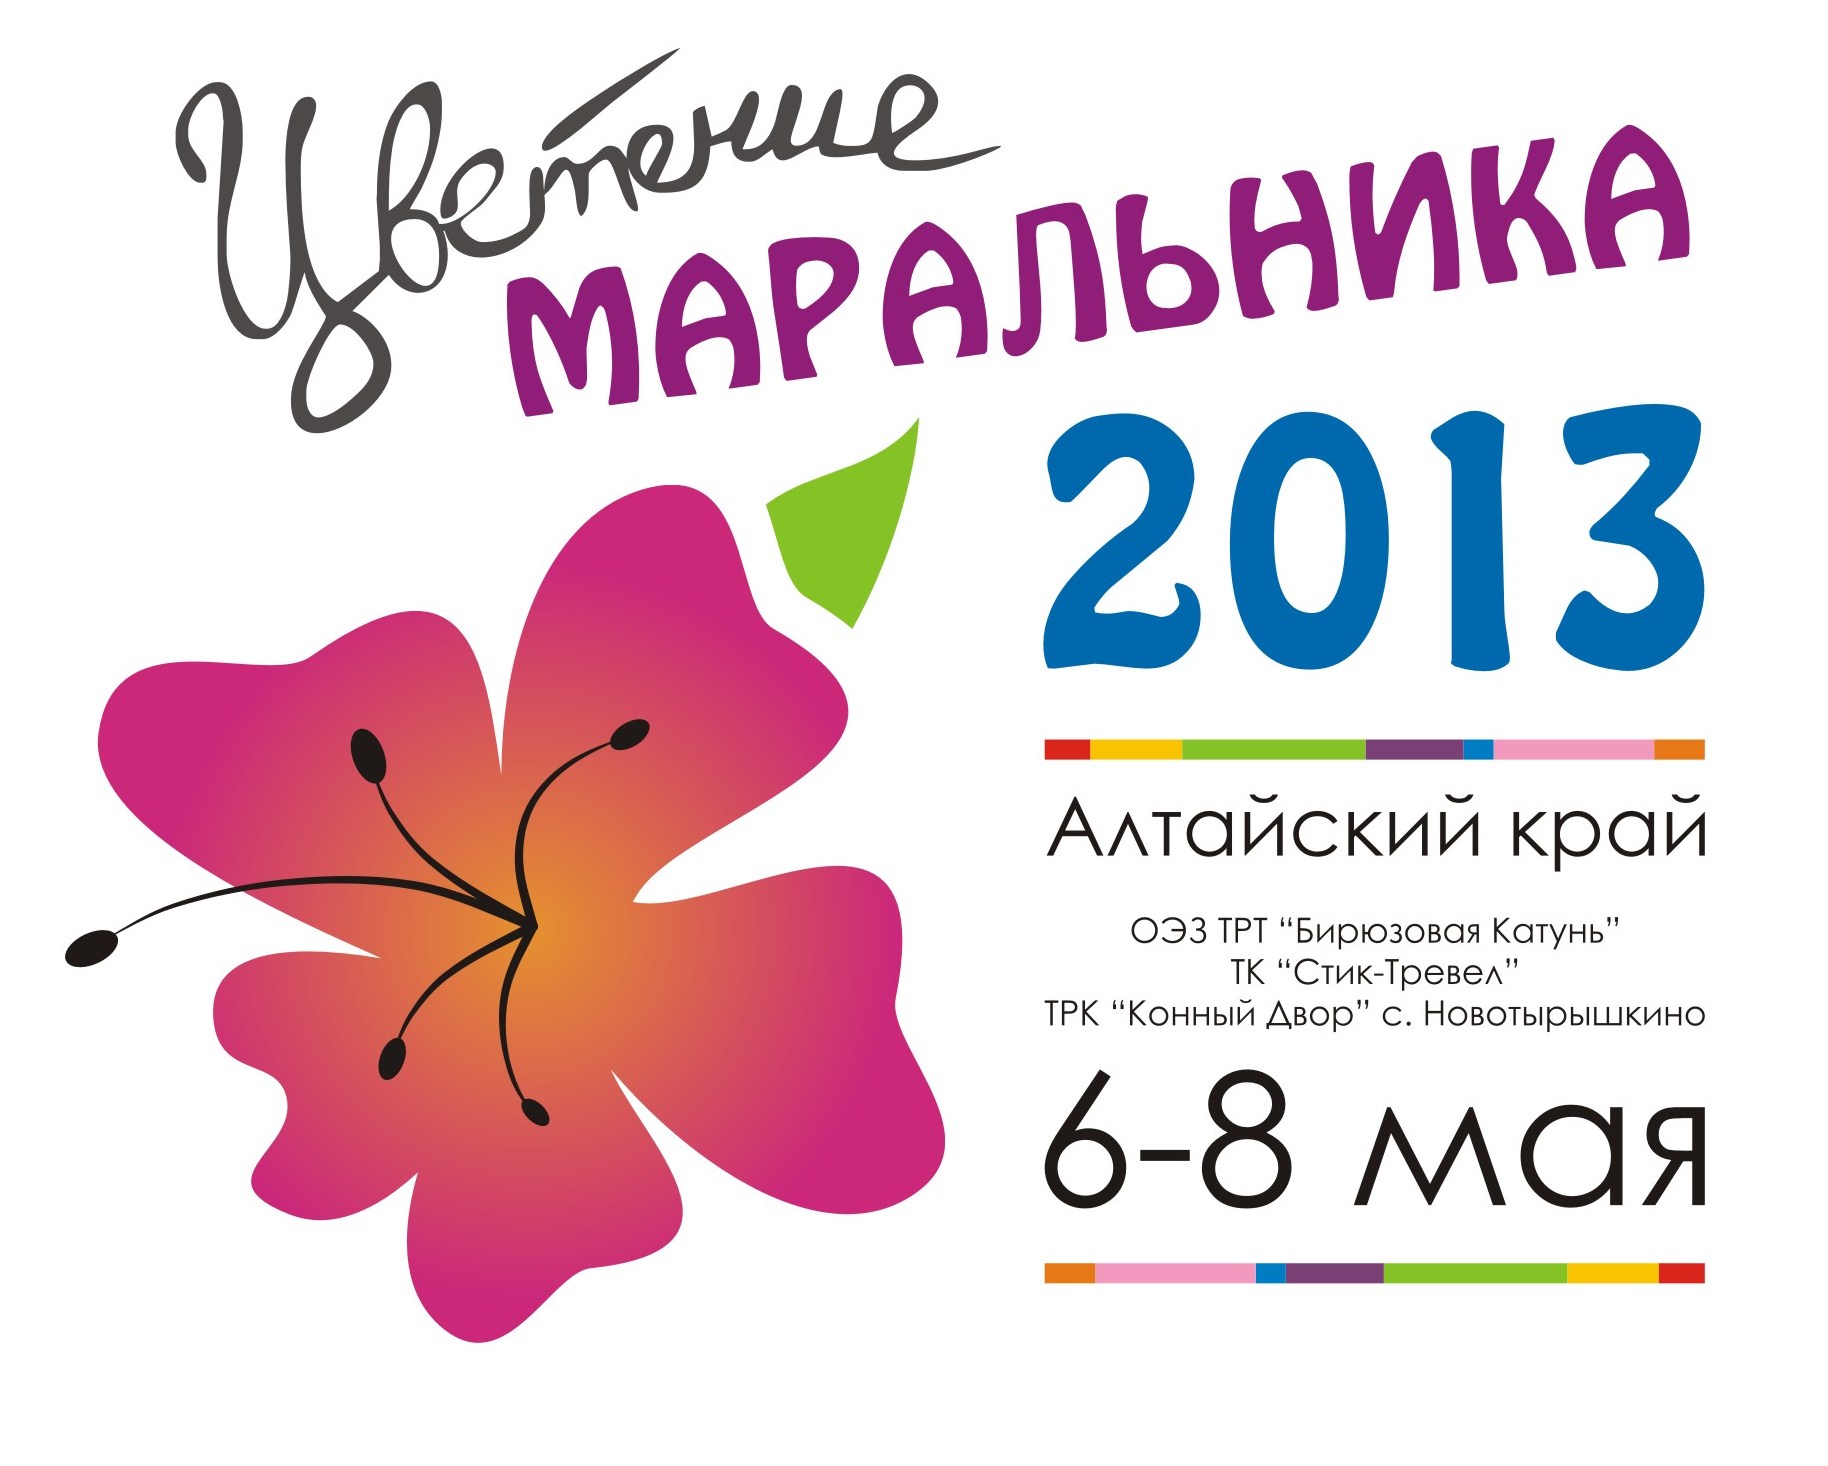 Программа праздника "Цветение маральника" с 06-08 мая 2013 года